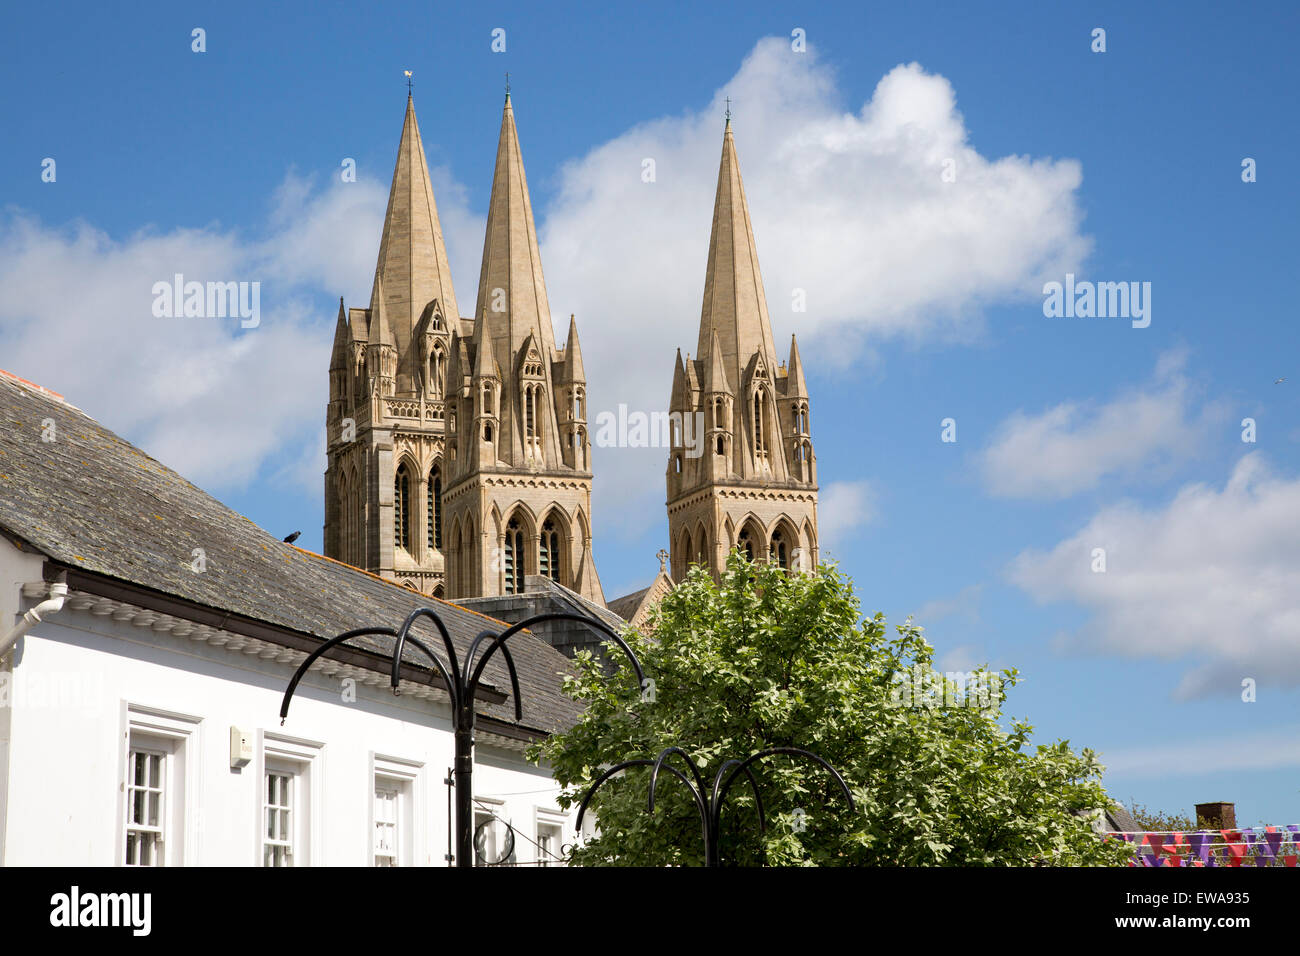 La cathédrale de tours de s'élever au-dessus des bâtiments du centre-ville historique, Truro, Cornwall, England, UK Banque D'Images